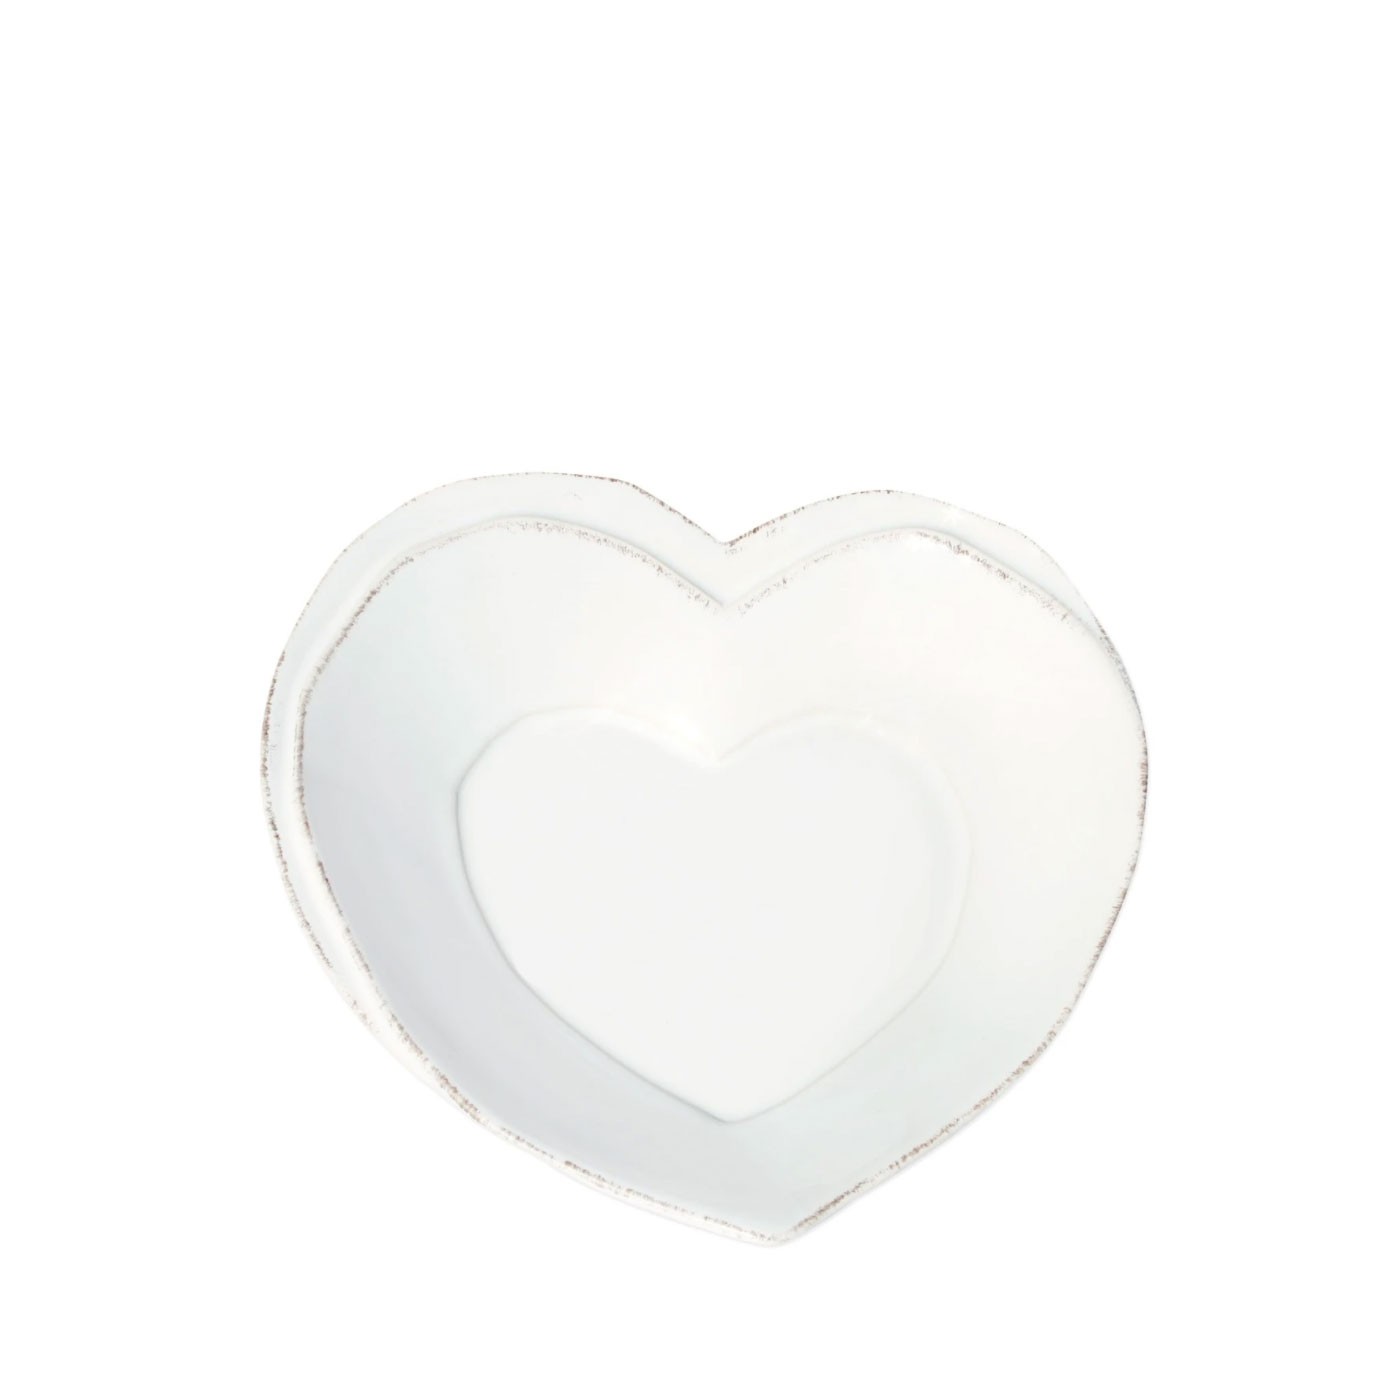 Lastra White Heart Dish - Vietri | Eataly.com